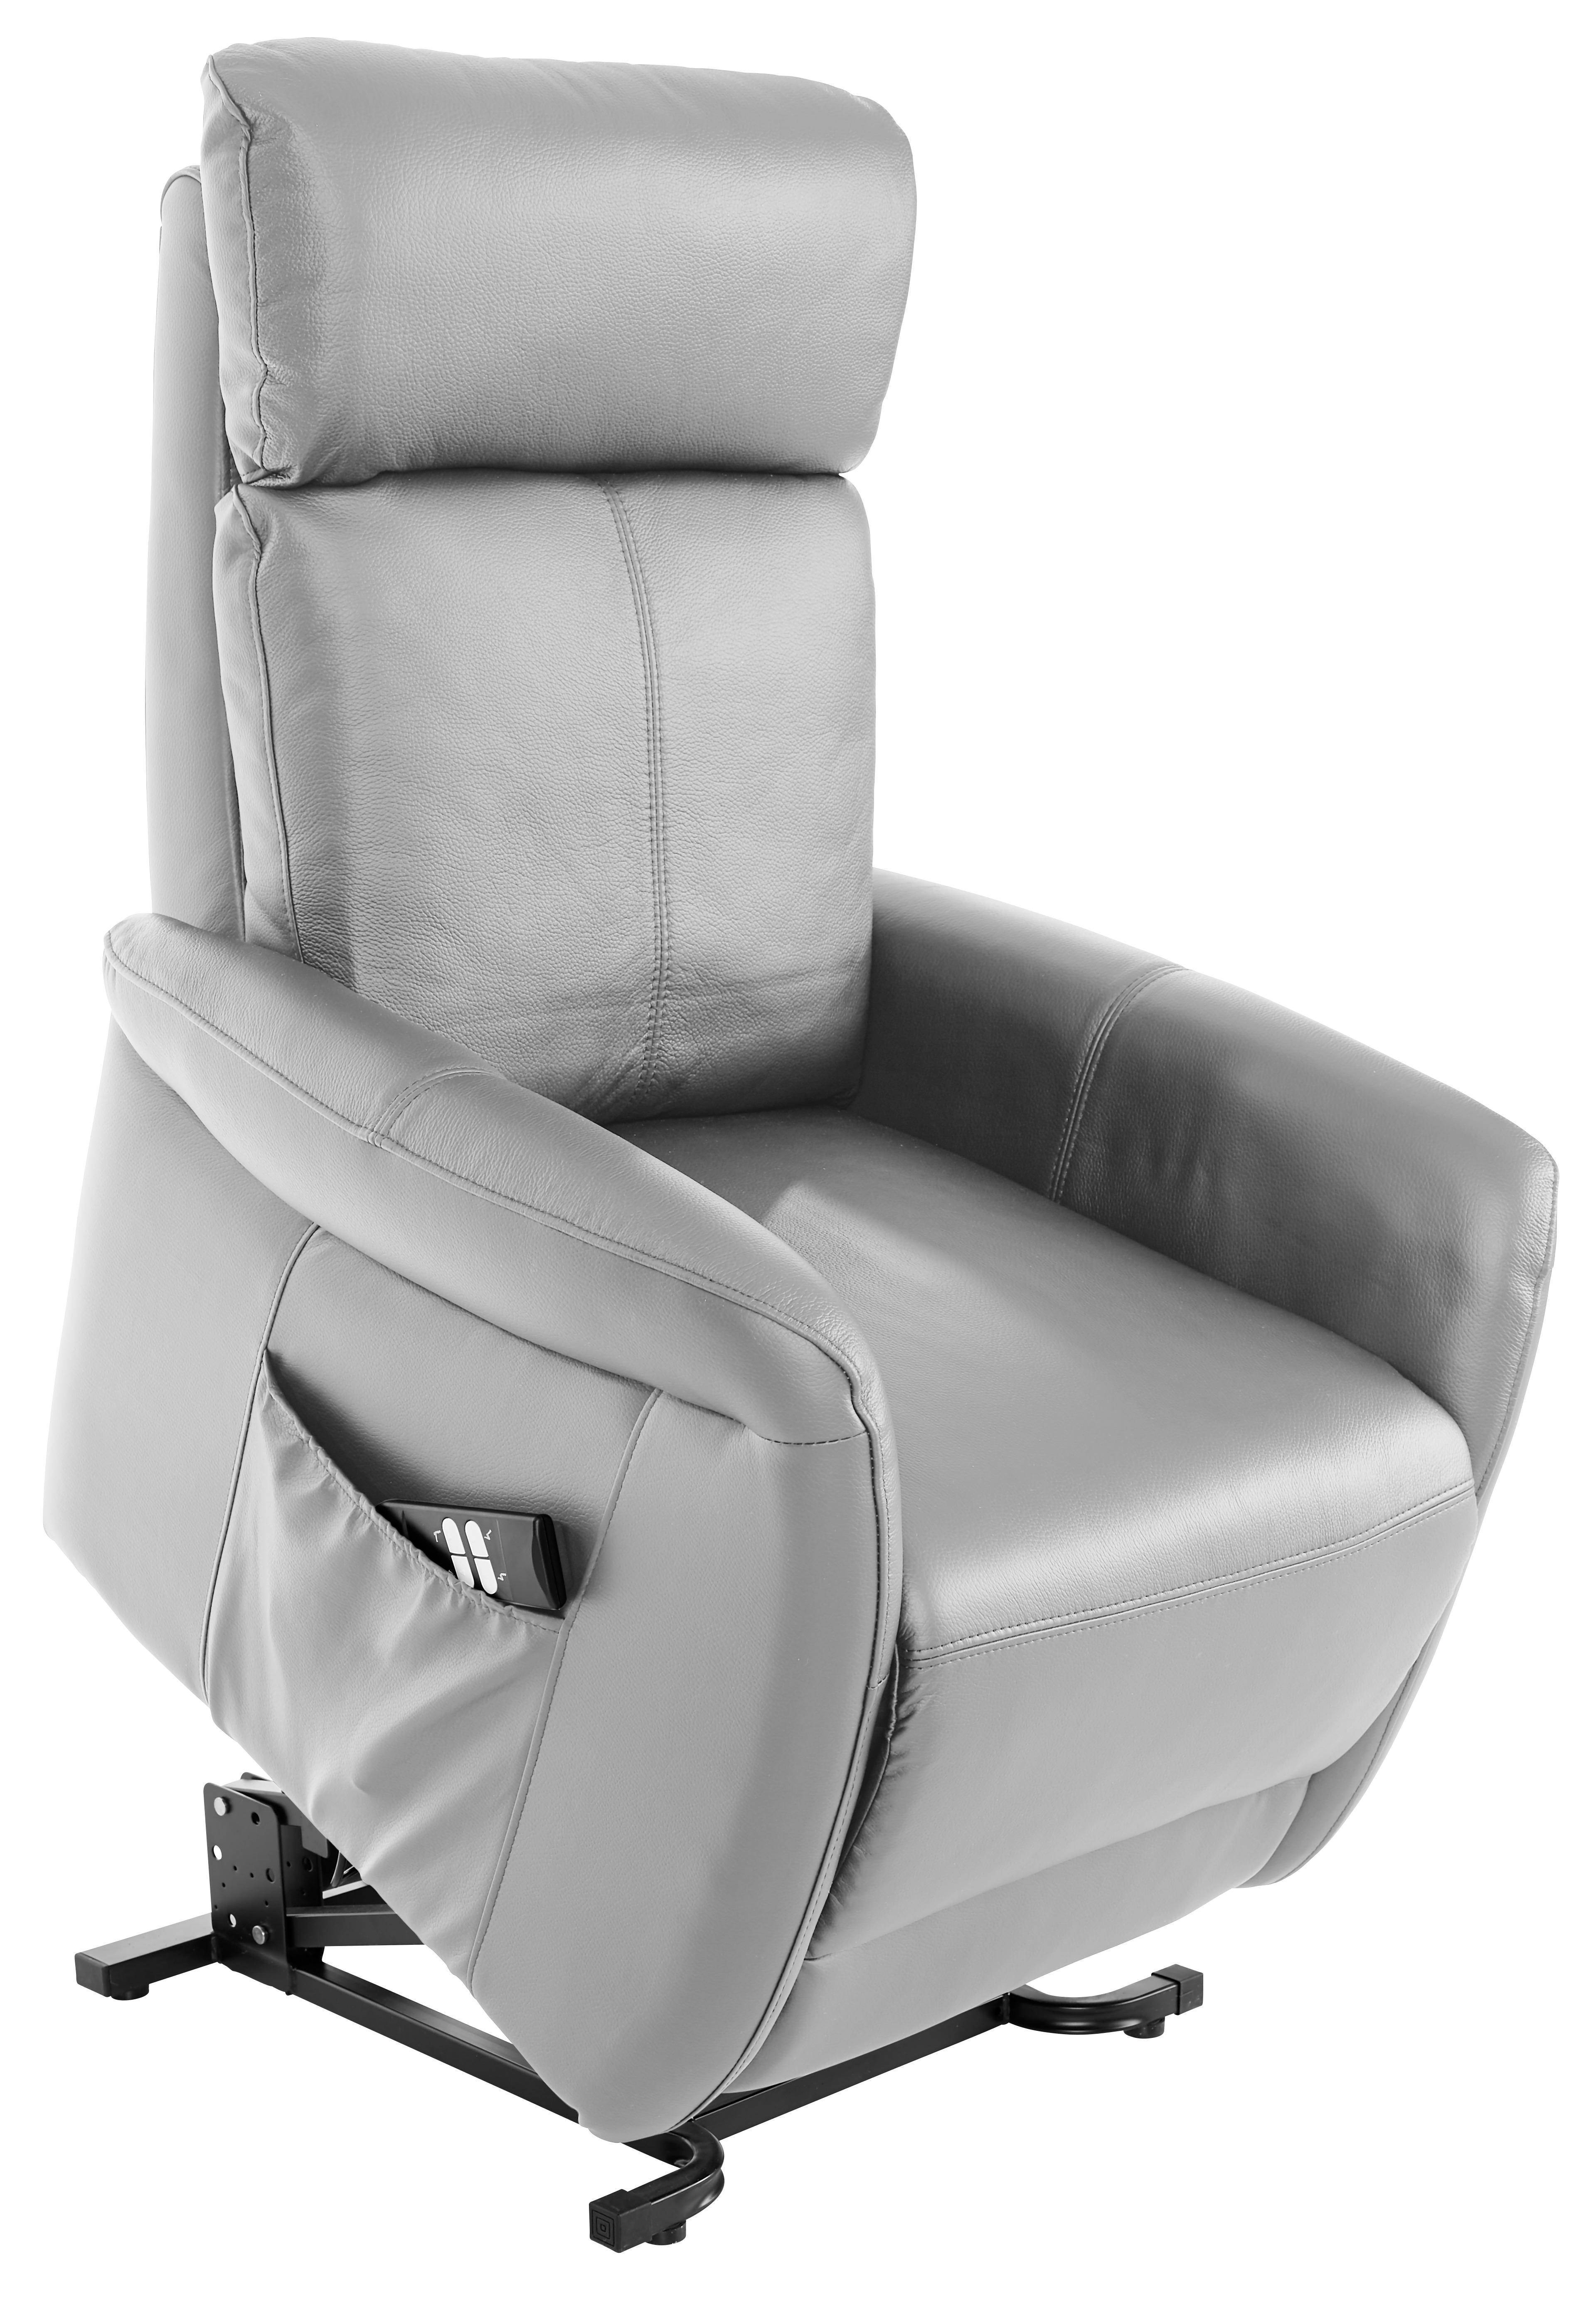 Tv Fotelja Hamilton - svijetlo siva/crna, Konventionell, koža/metal (90/108/74cm) - Modern Living